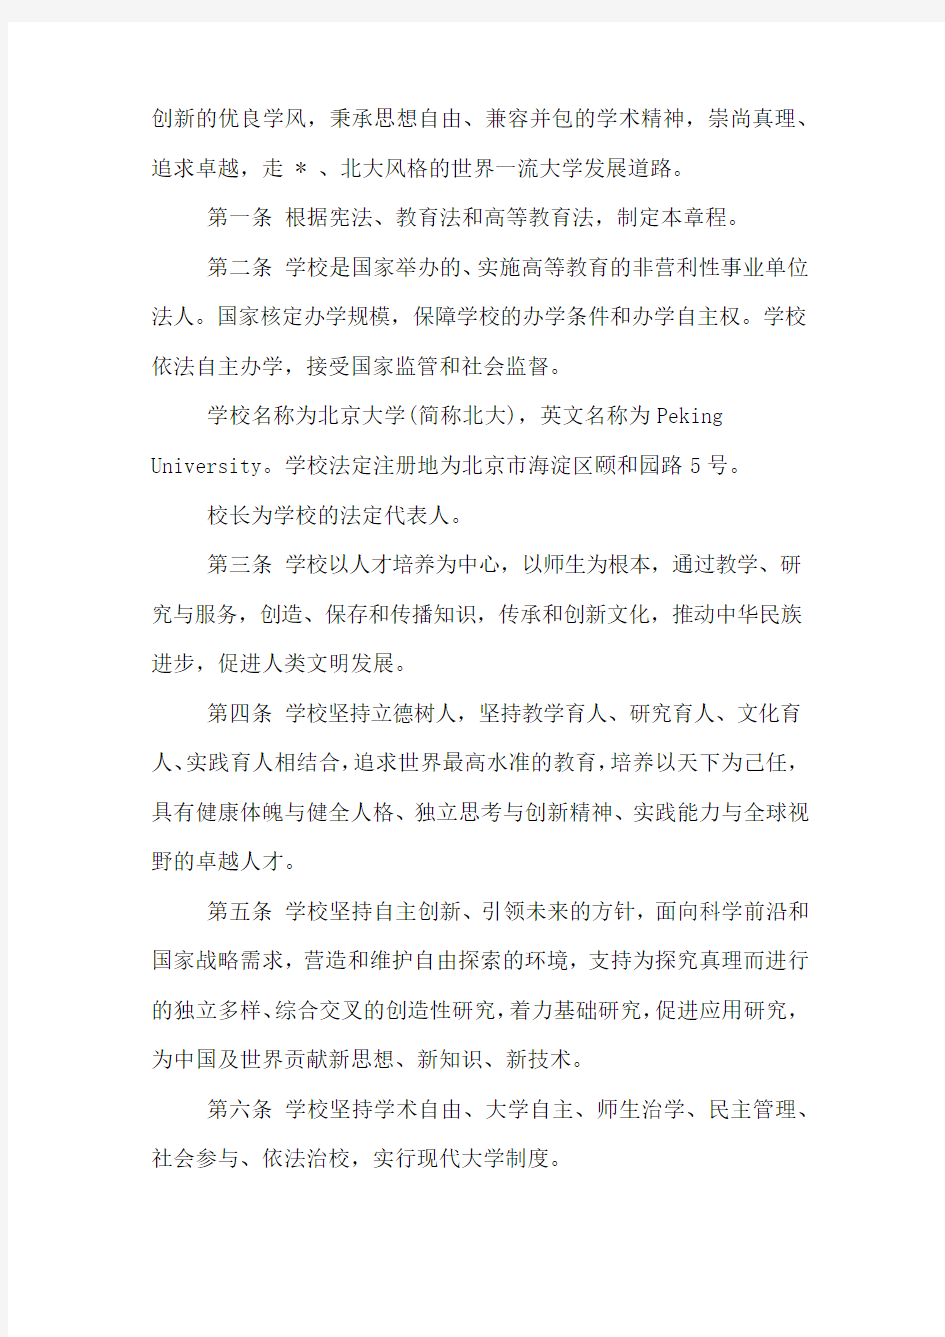 关于XX年北京大学章程